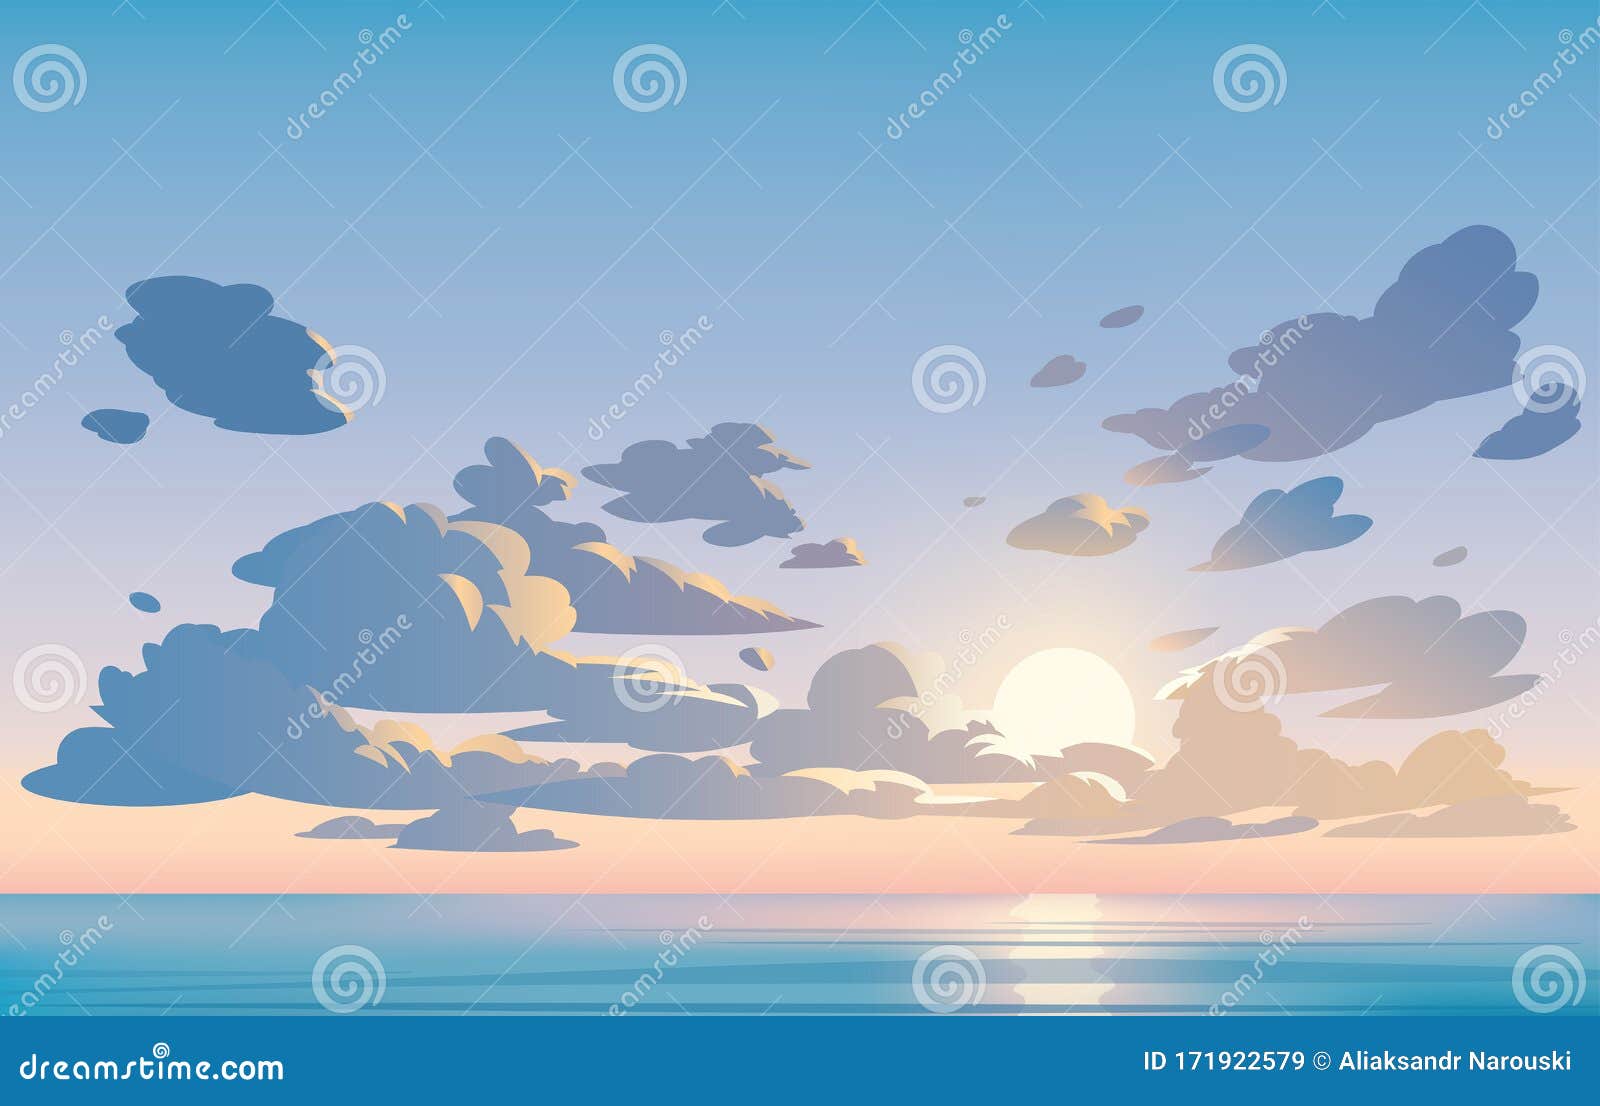 Hãy cùng phóng mắt đến những cảnh đẹp thần tiên của Vector Landscape Blue Sky and Clouds. Sunset. Anime Cartoon Clean, với đa dạng của các khung cảnh đất, trời, đại dương và núi non. Phong cảnh thú vị và đầy màu sắc của anime sẽ đem lại cho bạn một trải nghiệm thực sự.